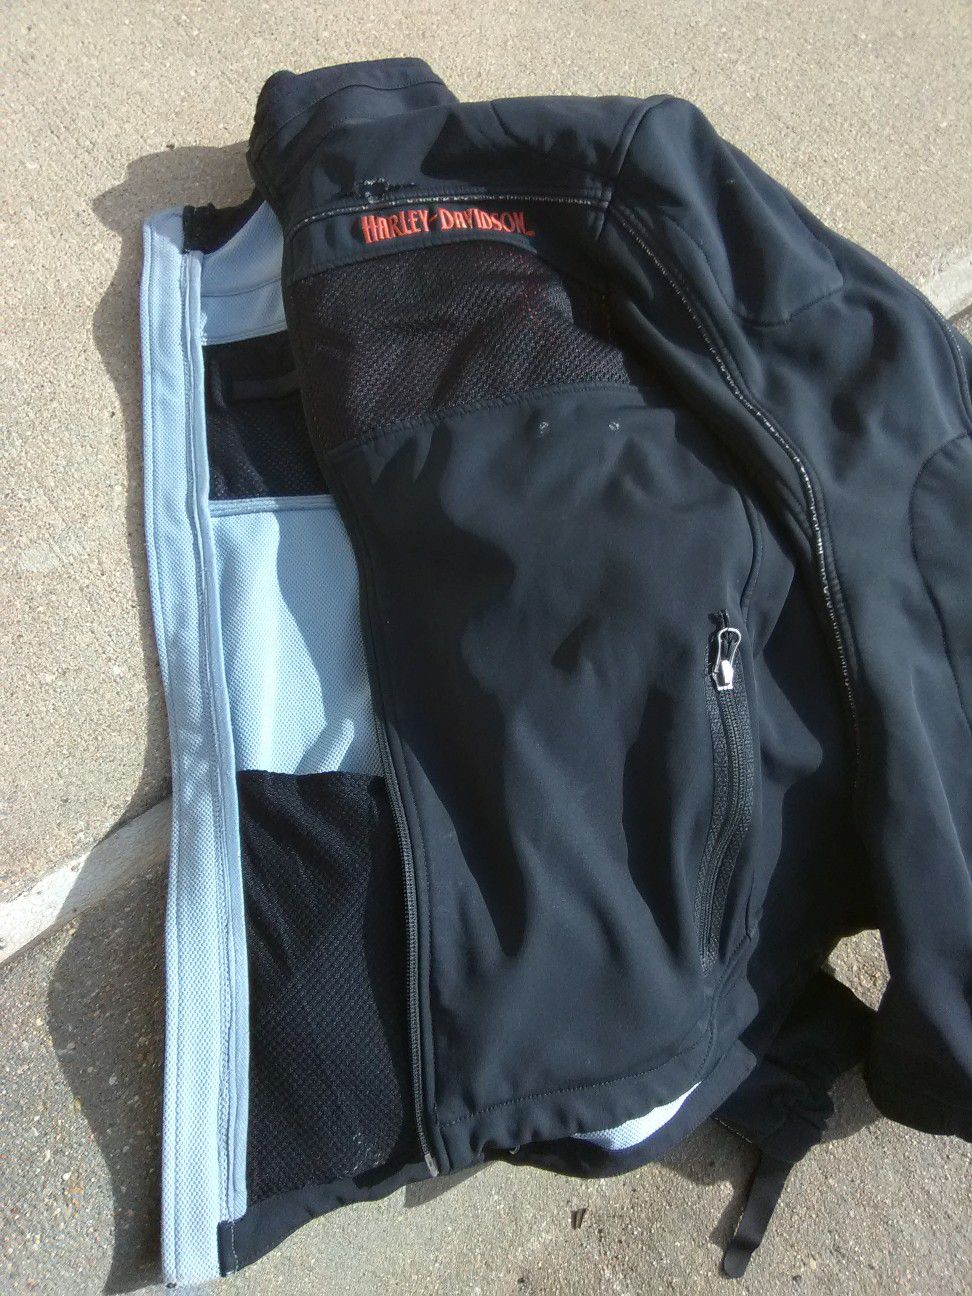 Wind proof, Harley Davidson jacket